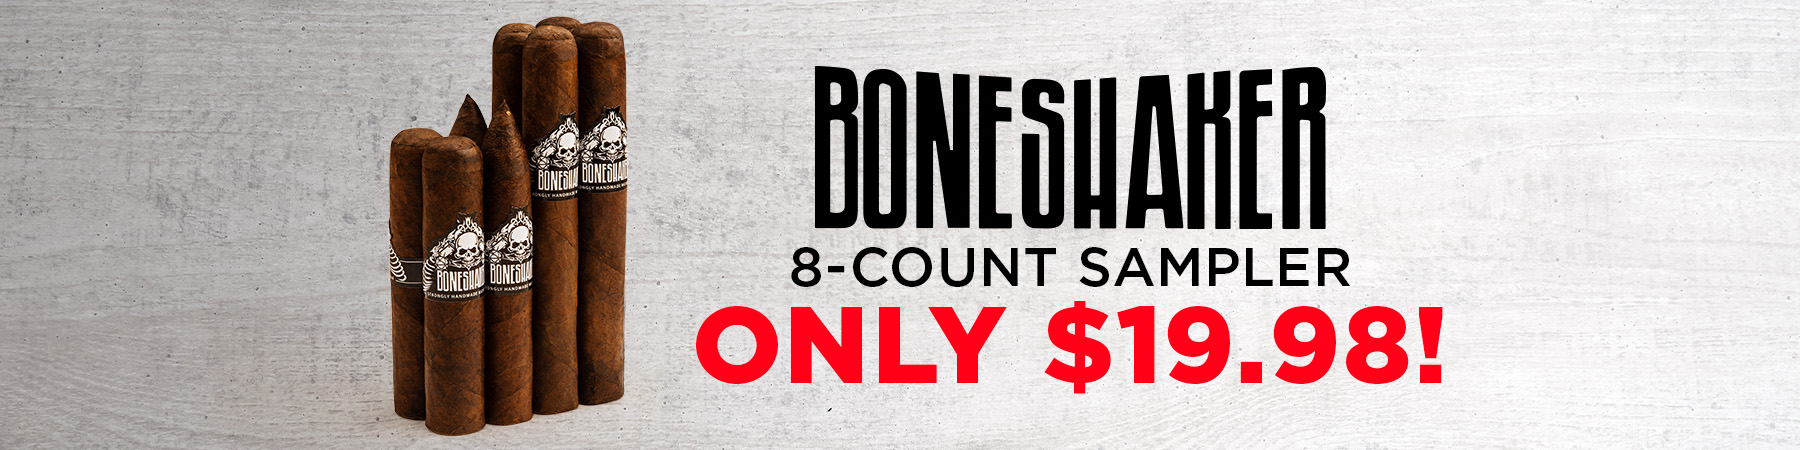 Boneshaker 8-Count Sampler Only $19.98